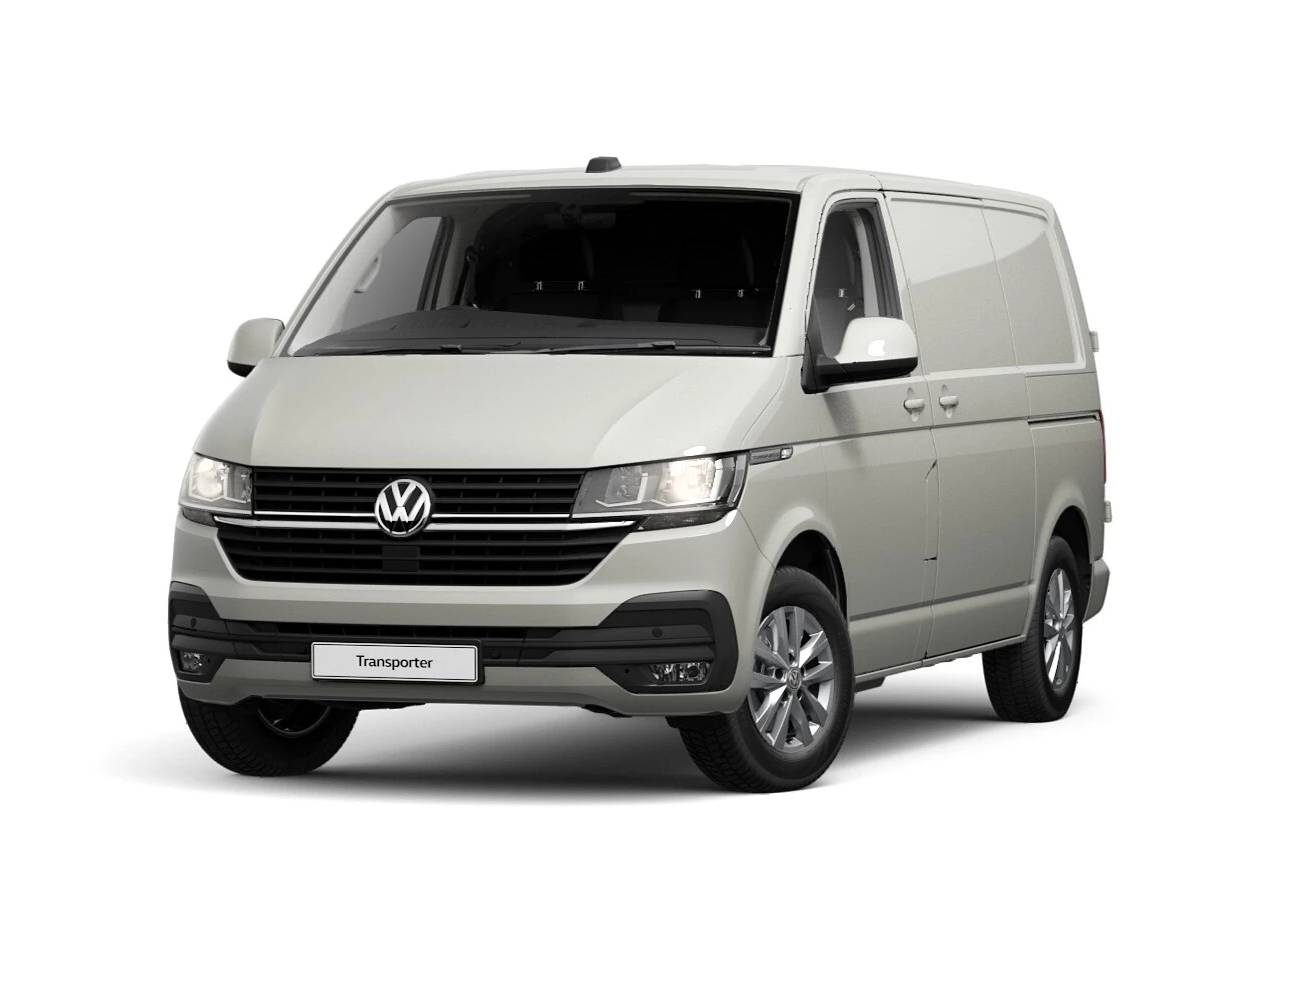 New Volkswagen Transporter Offers 